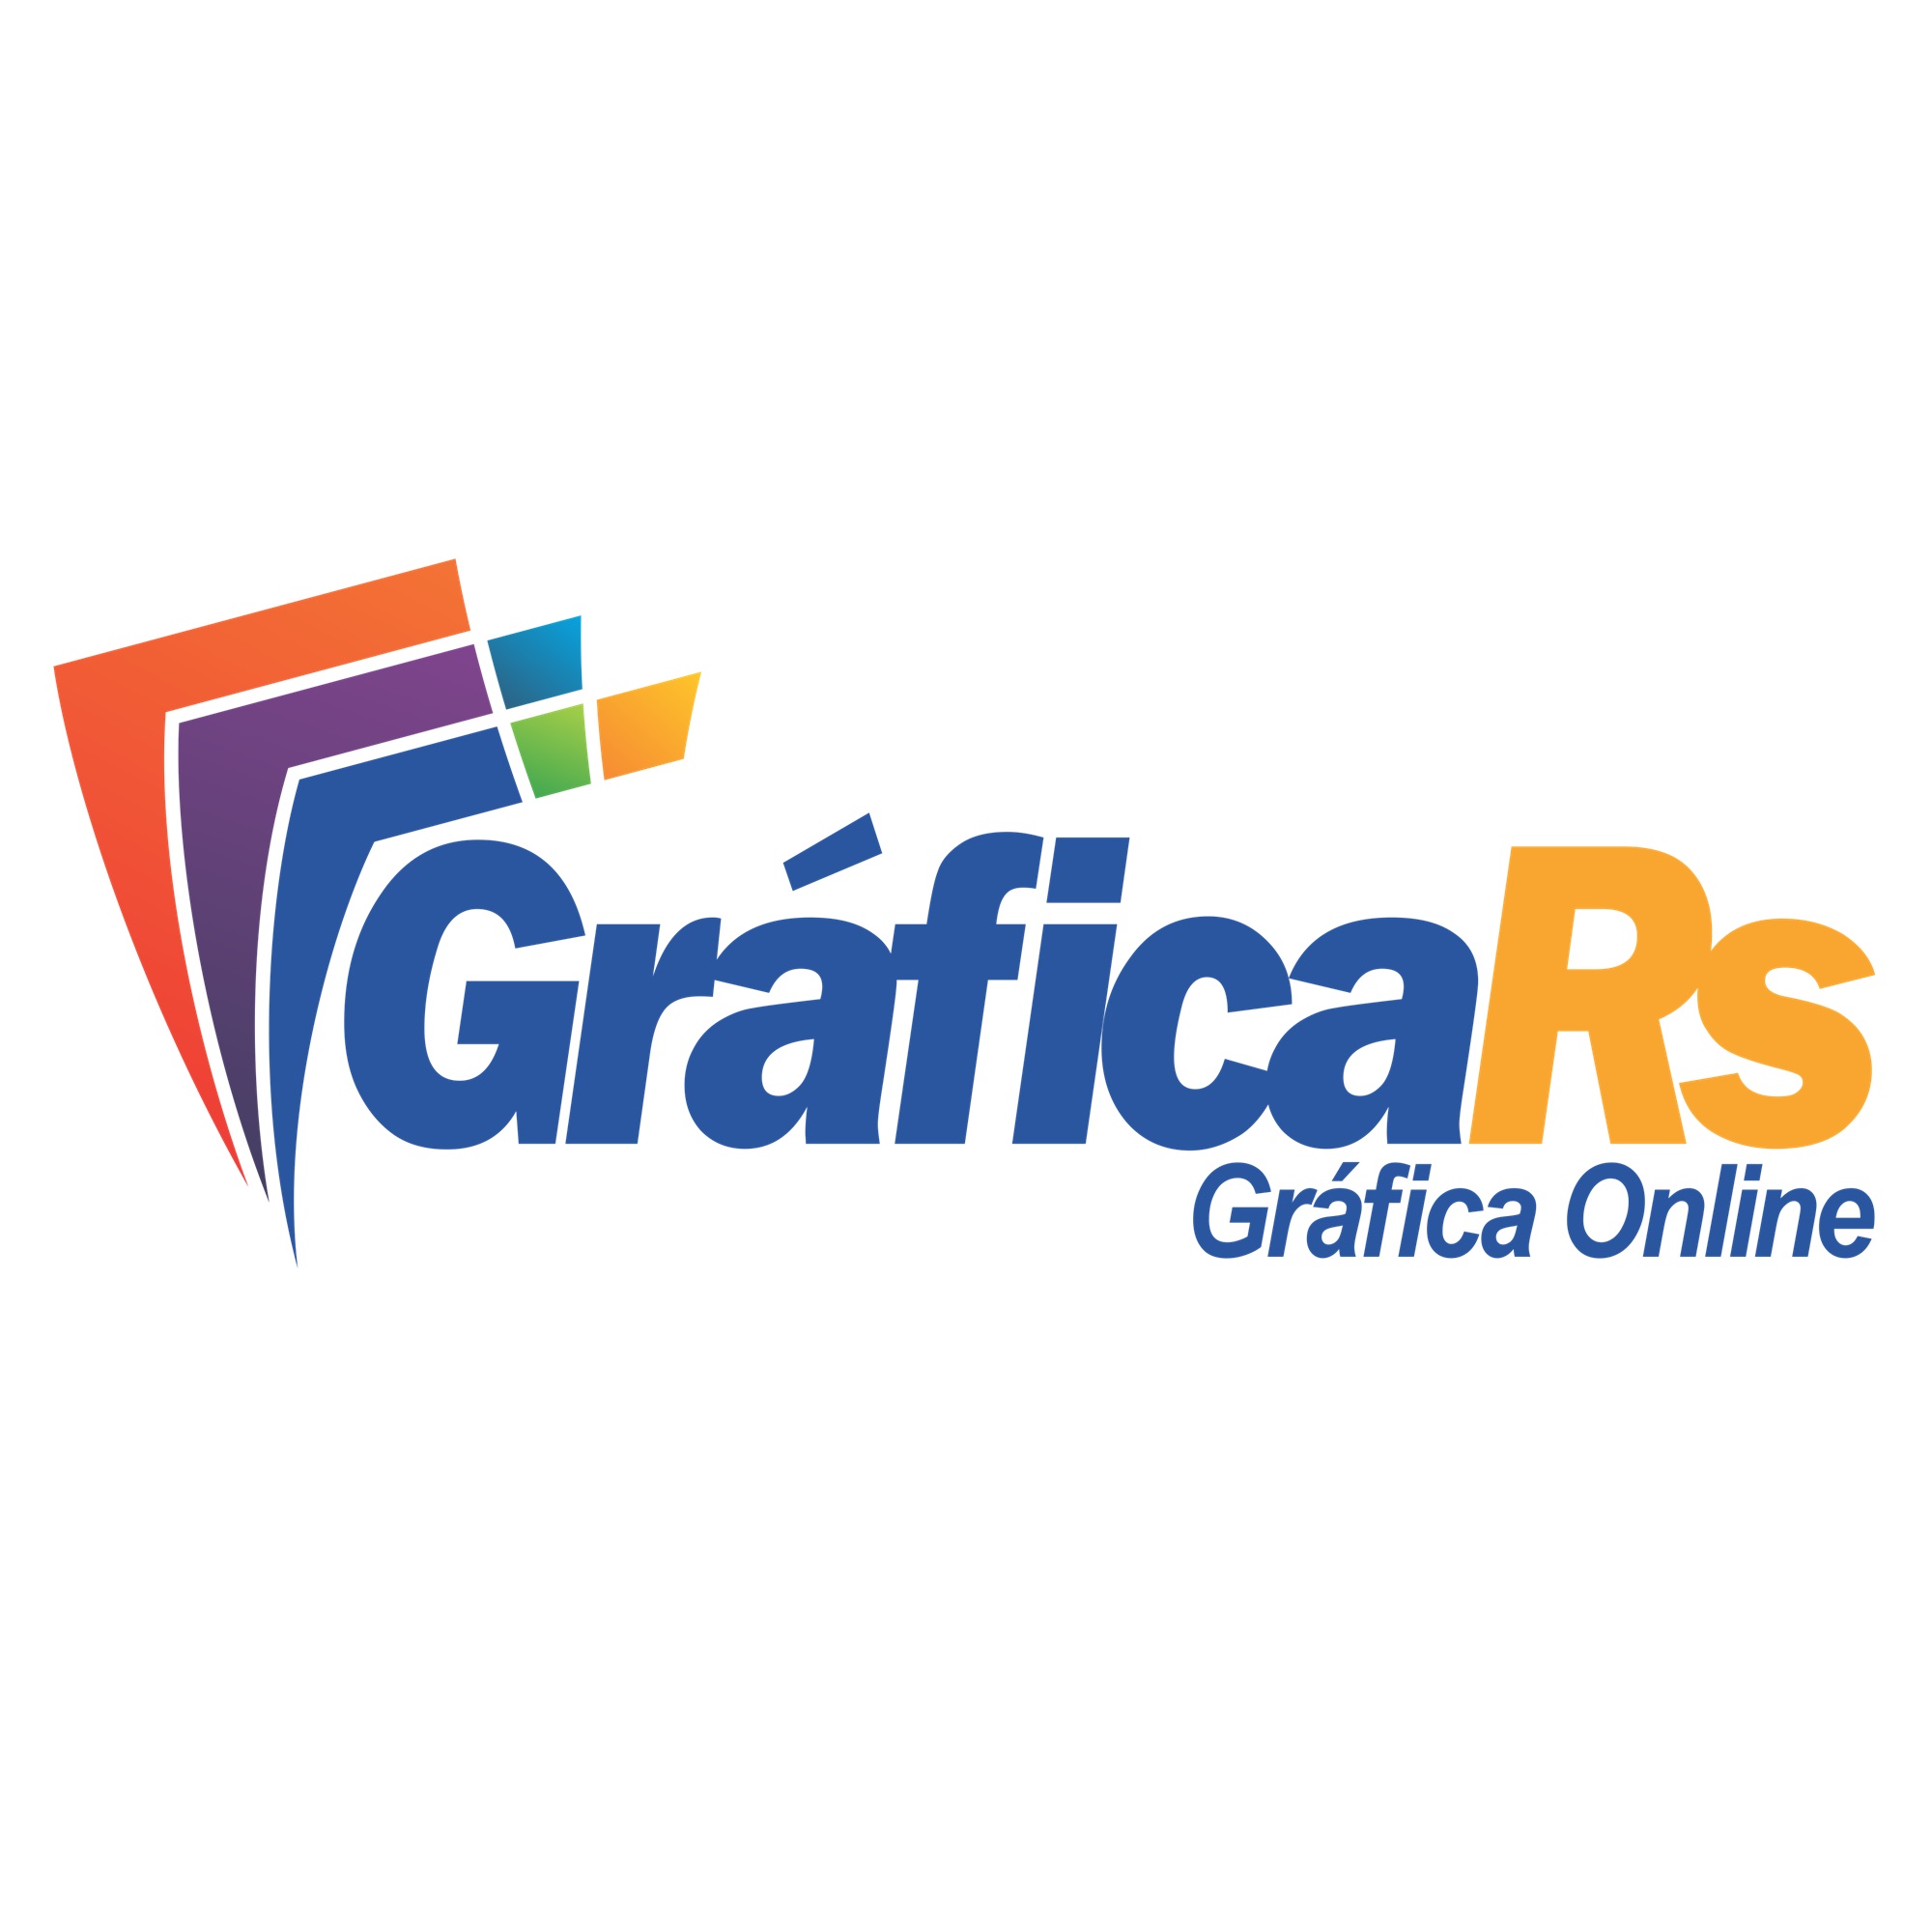 GRÁFICA RS - Gráfica - Empresa - São Paulo, SP